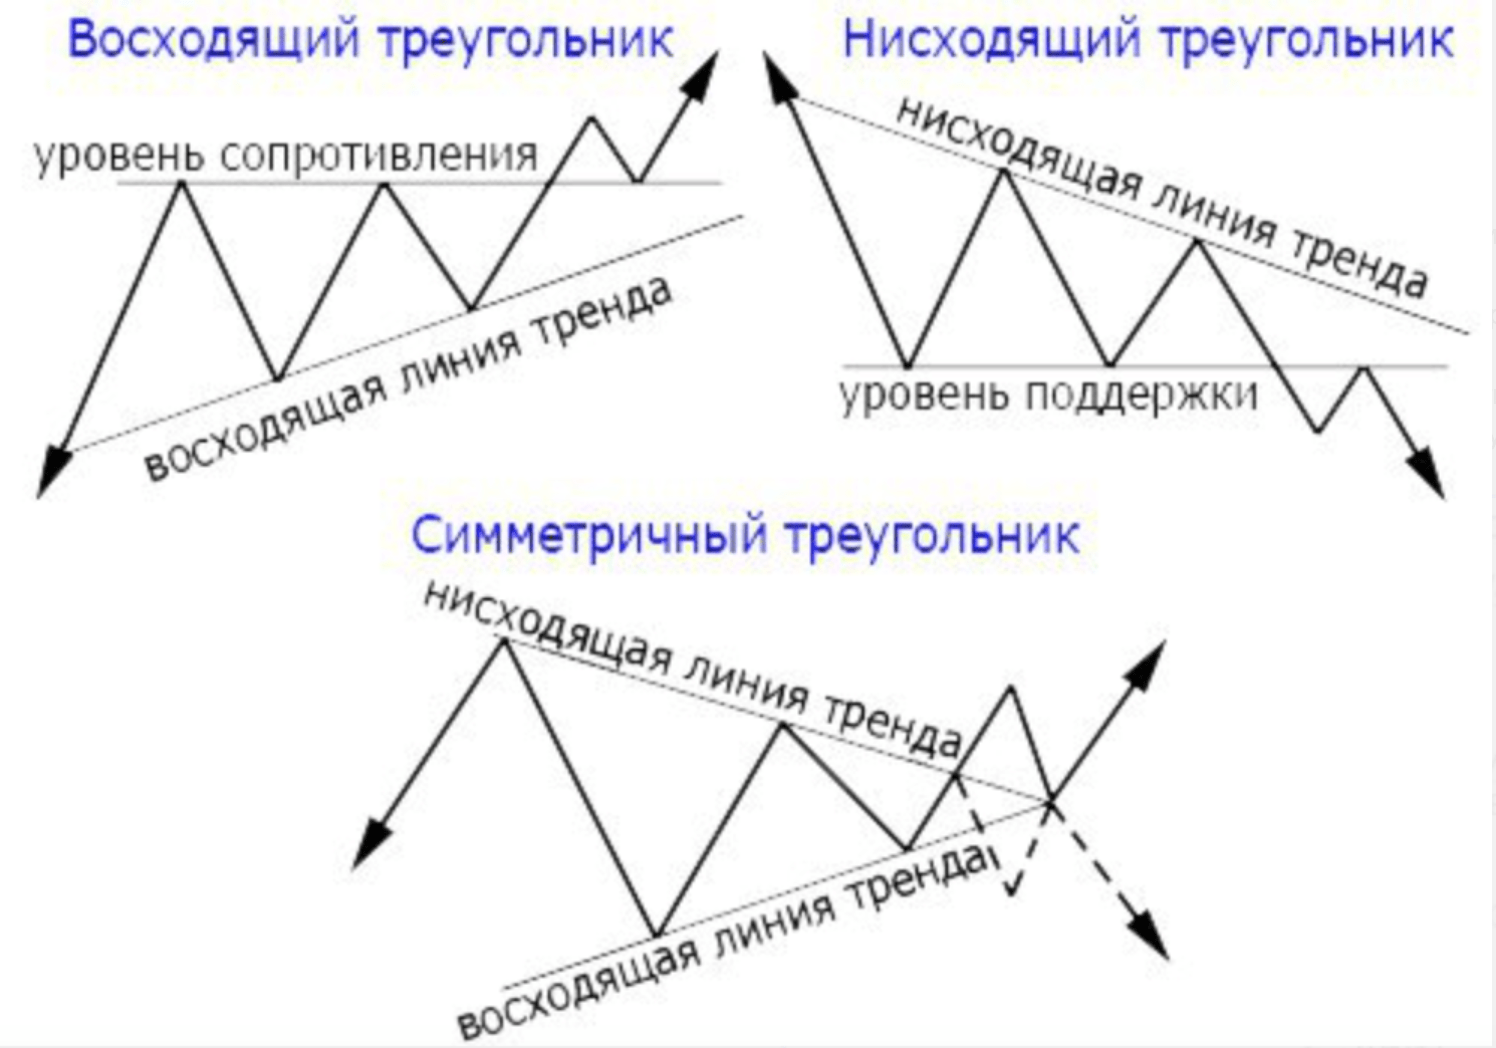 Фигуры трейдинга и их значение. Треугольник с плоским верхом в трейдинге. Фигура восходящий треугольник в трейдинге. Фигуры технического анализа в трейдинге. Восходящий нисходящий треугольник фигуры технического анализа.